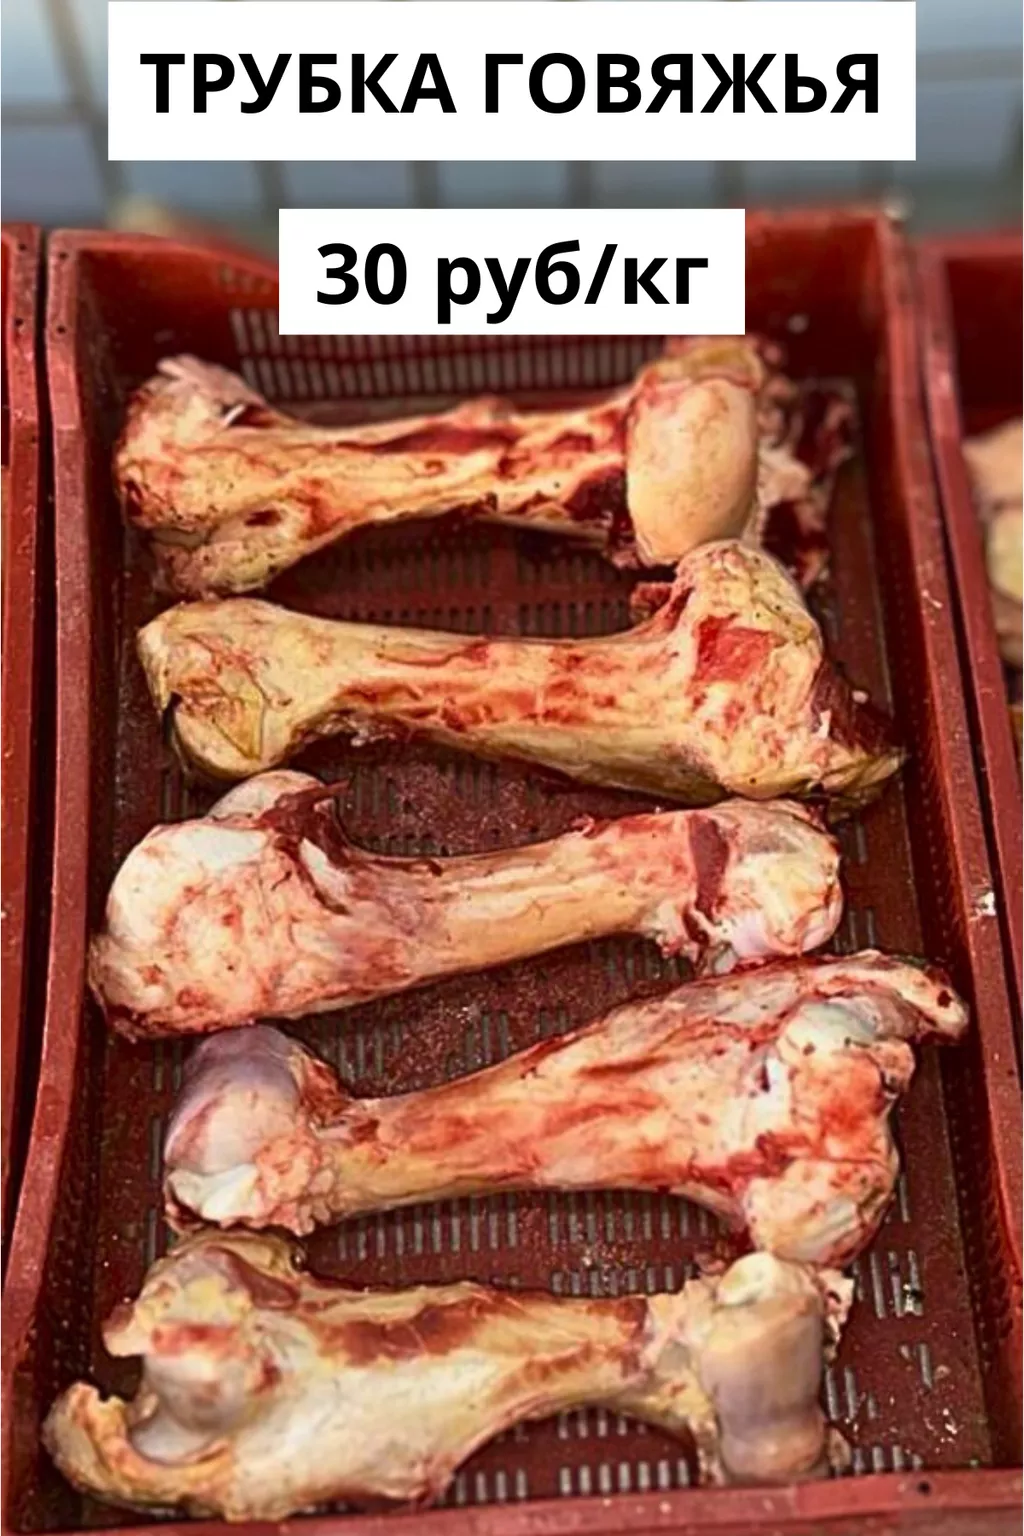 кость говяжья (гантеля) в Ижевске и Удмуртской республике